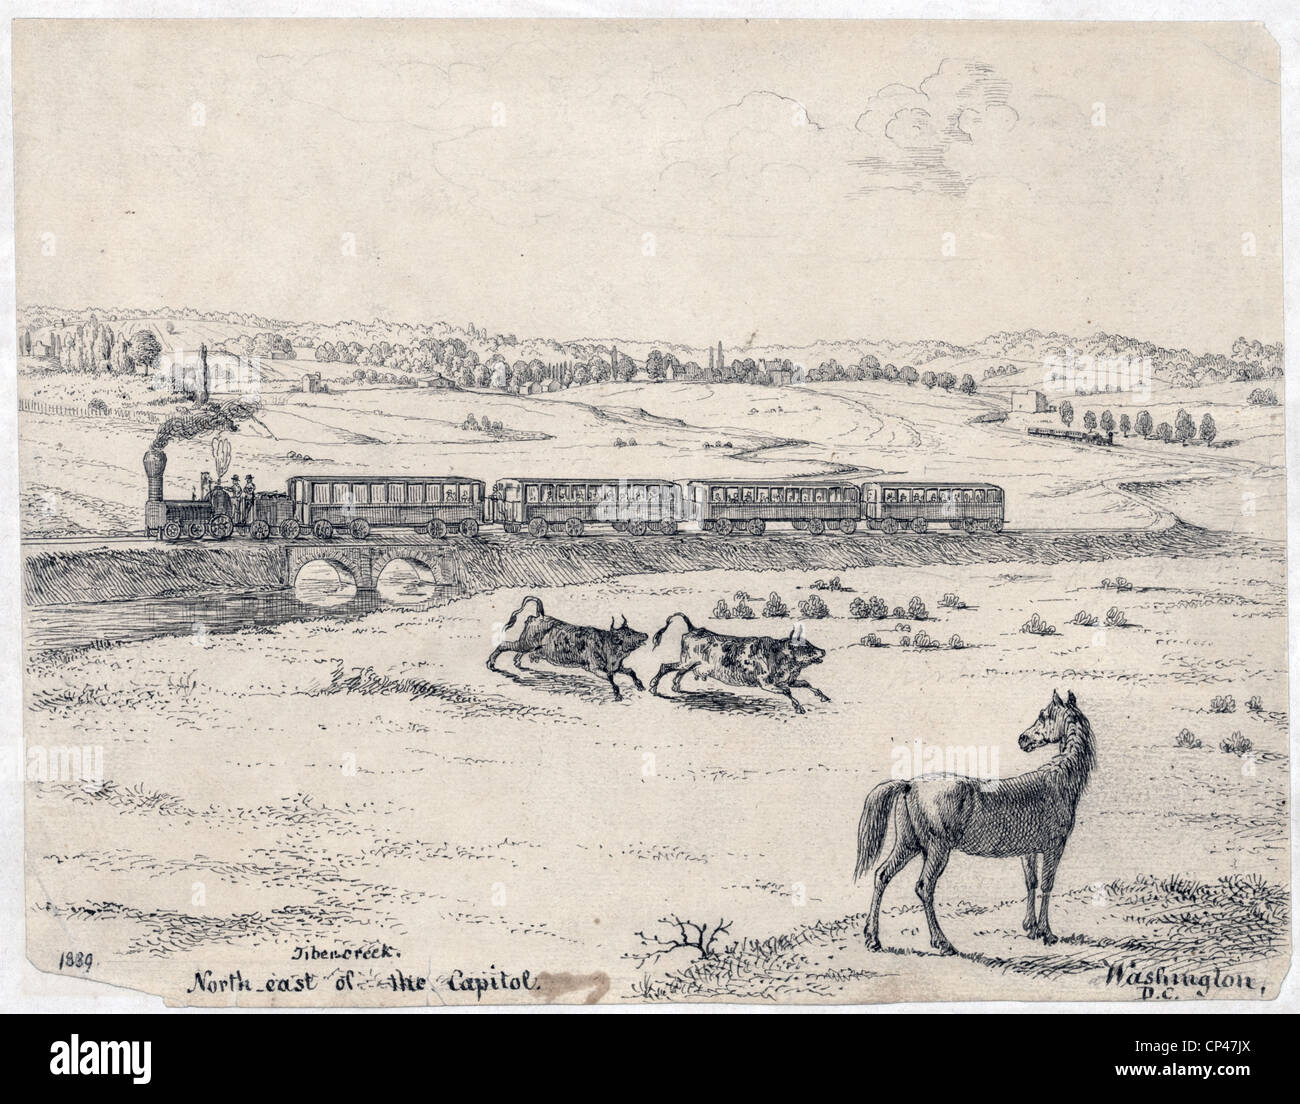 Un train de voyageurs traversant le ruisseau du Tibre, au nord-est de Washington, DC. 1839 Banque D'Images